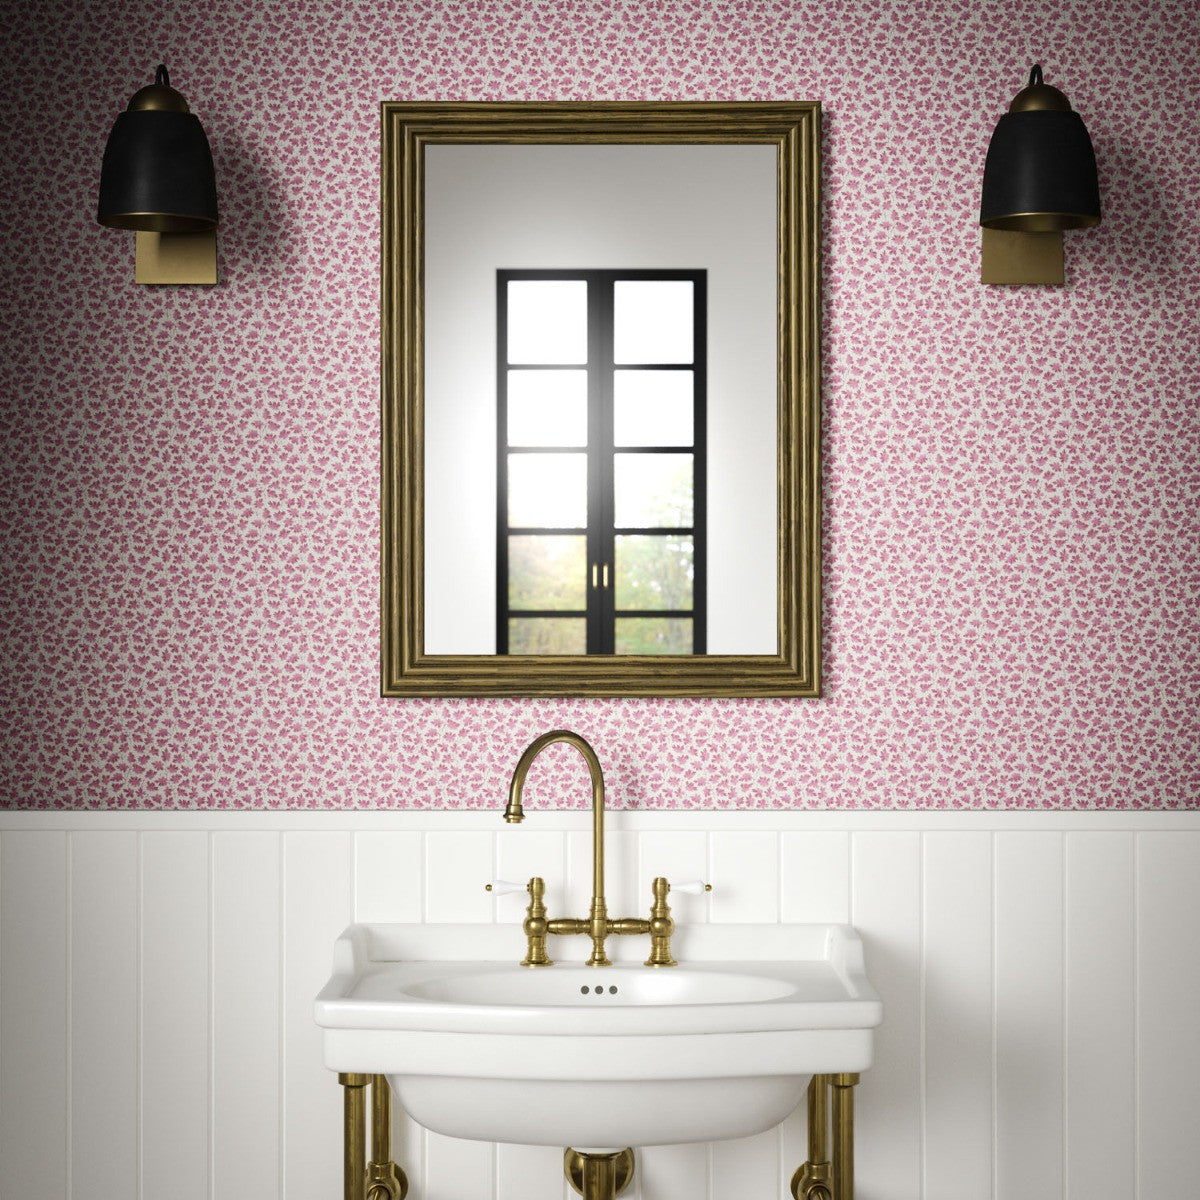 LEAF TRAIL Pink Wallpaper - Warner House